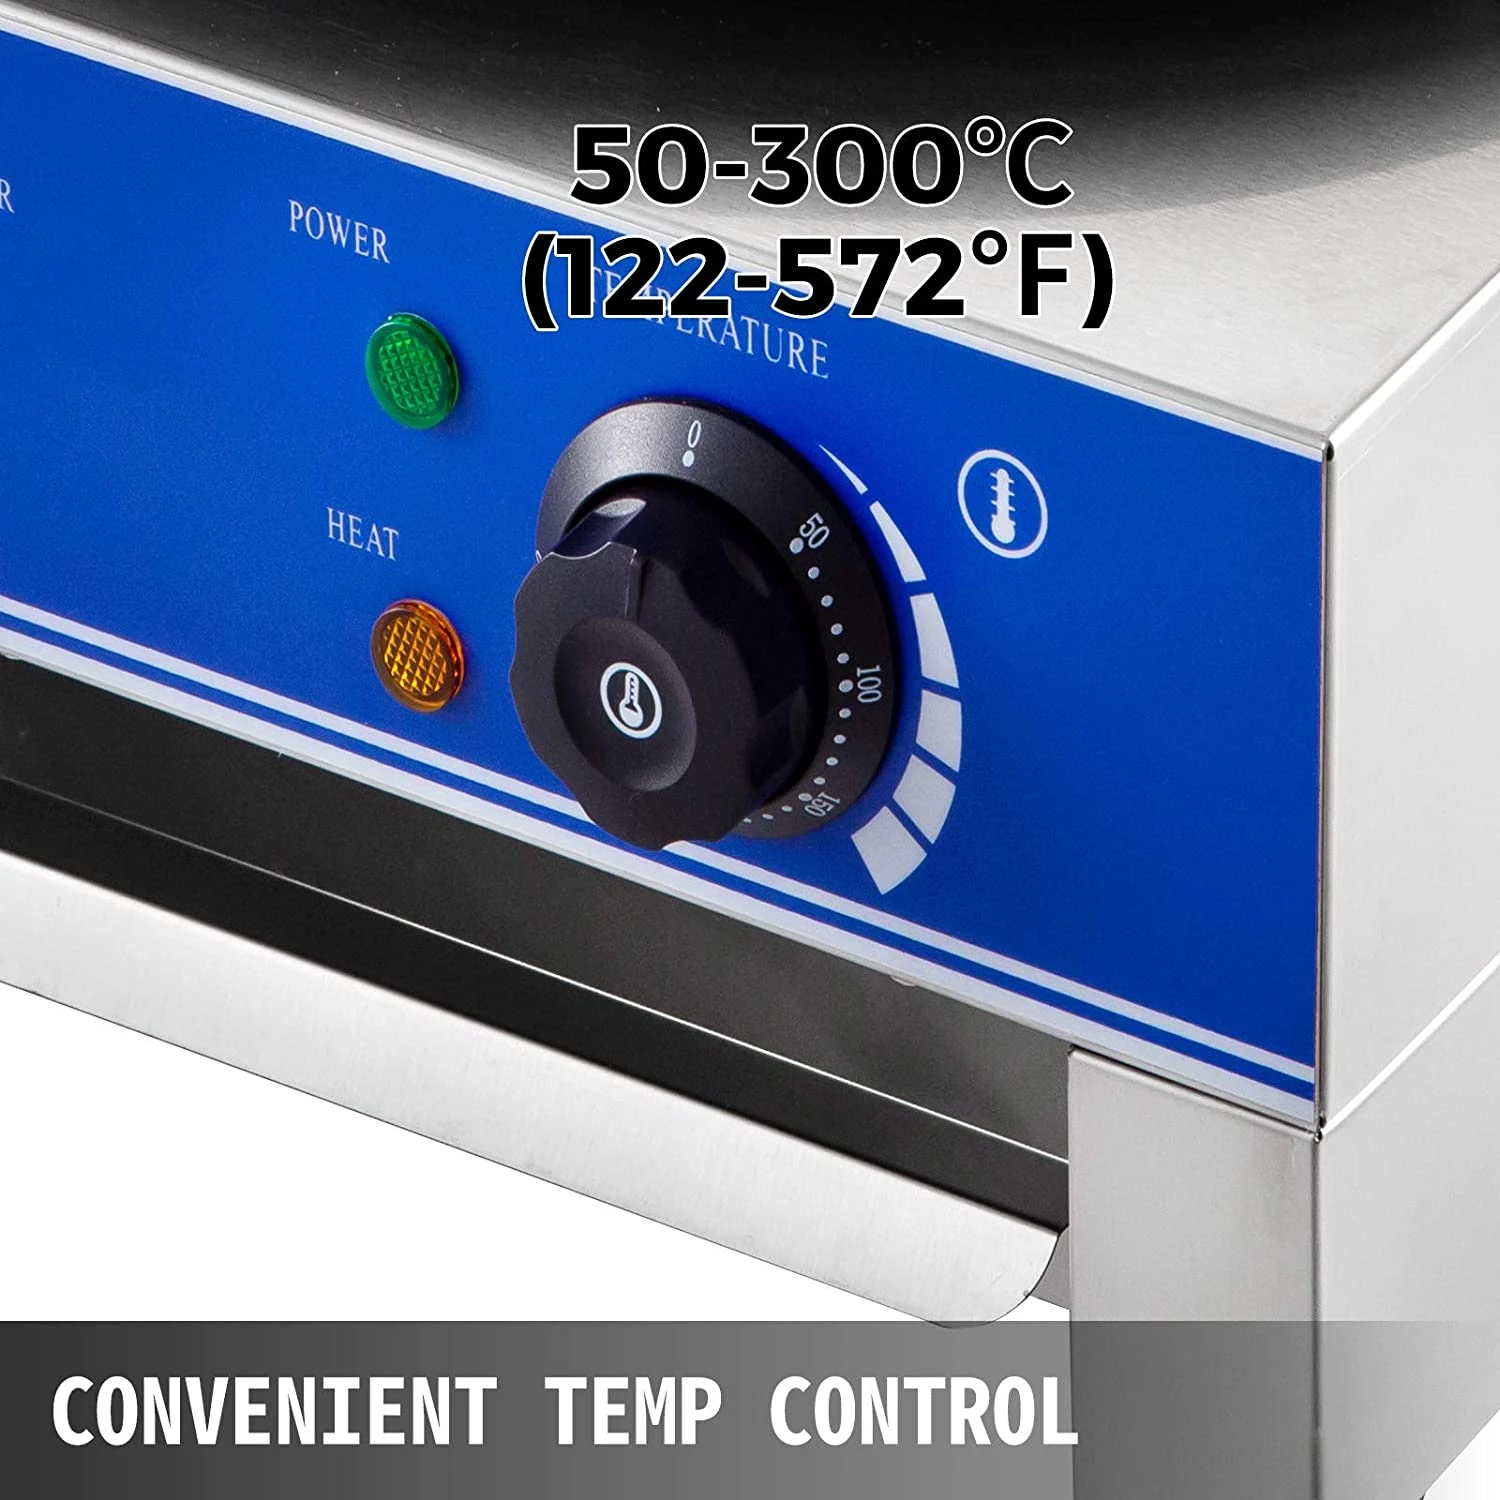 Crepera Anti Adherente CR-40 tapisa – Reccom Refrigeración Comercial